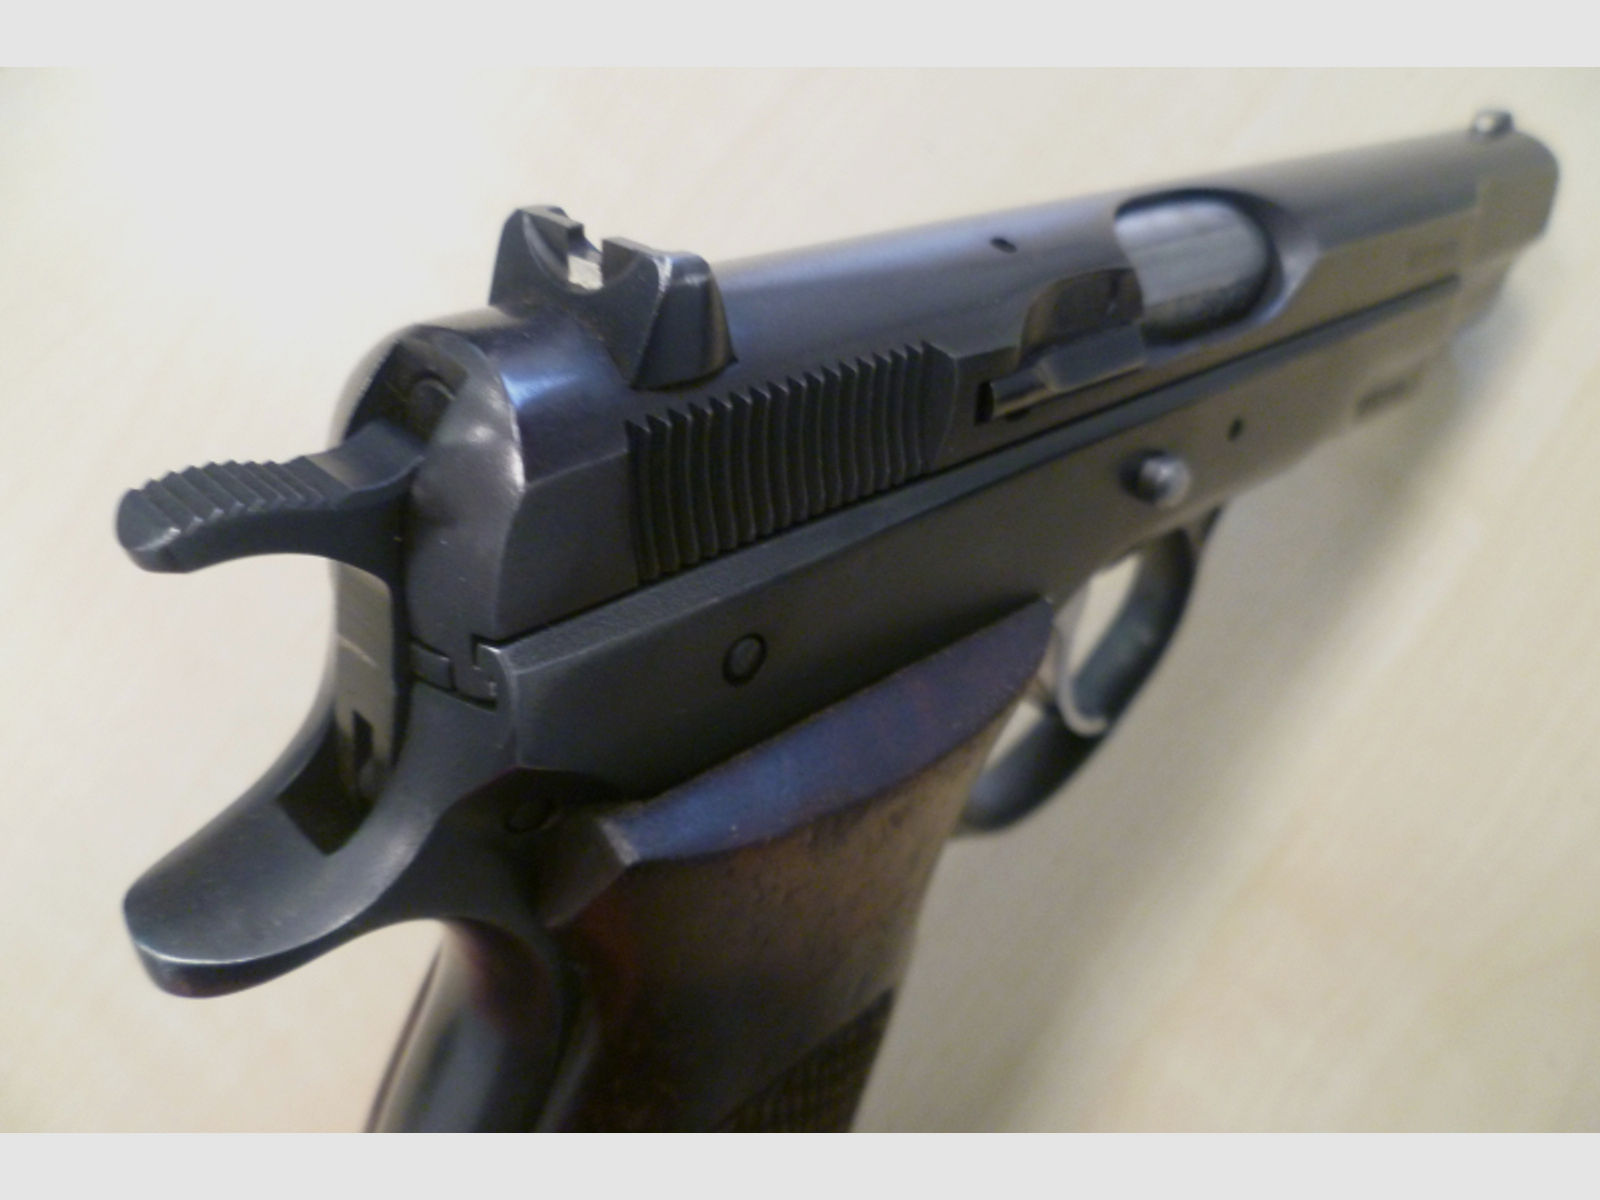 Pistole CZ Model 75 - CZ 75 9mm Luger